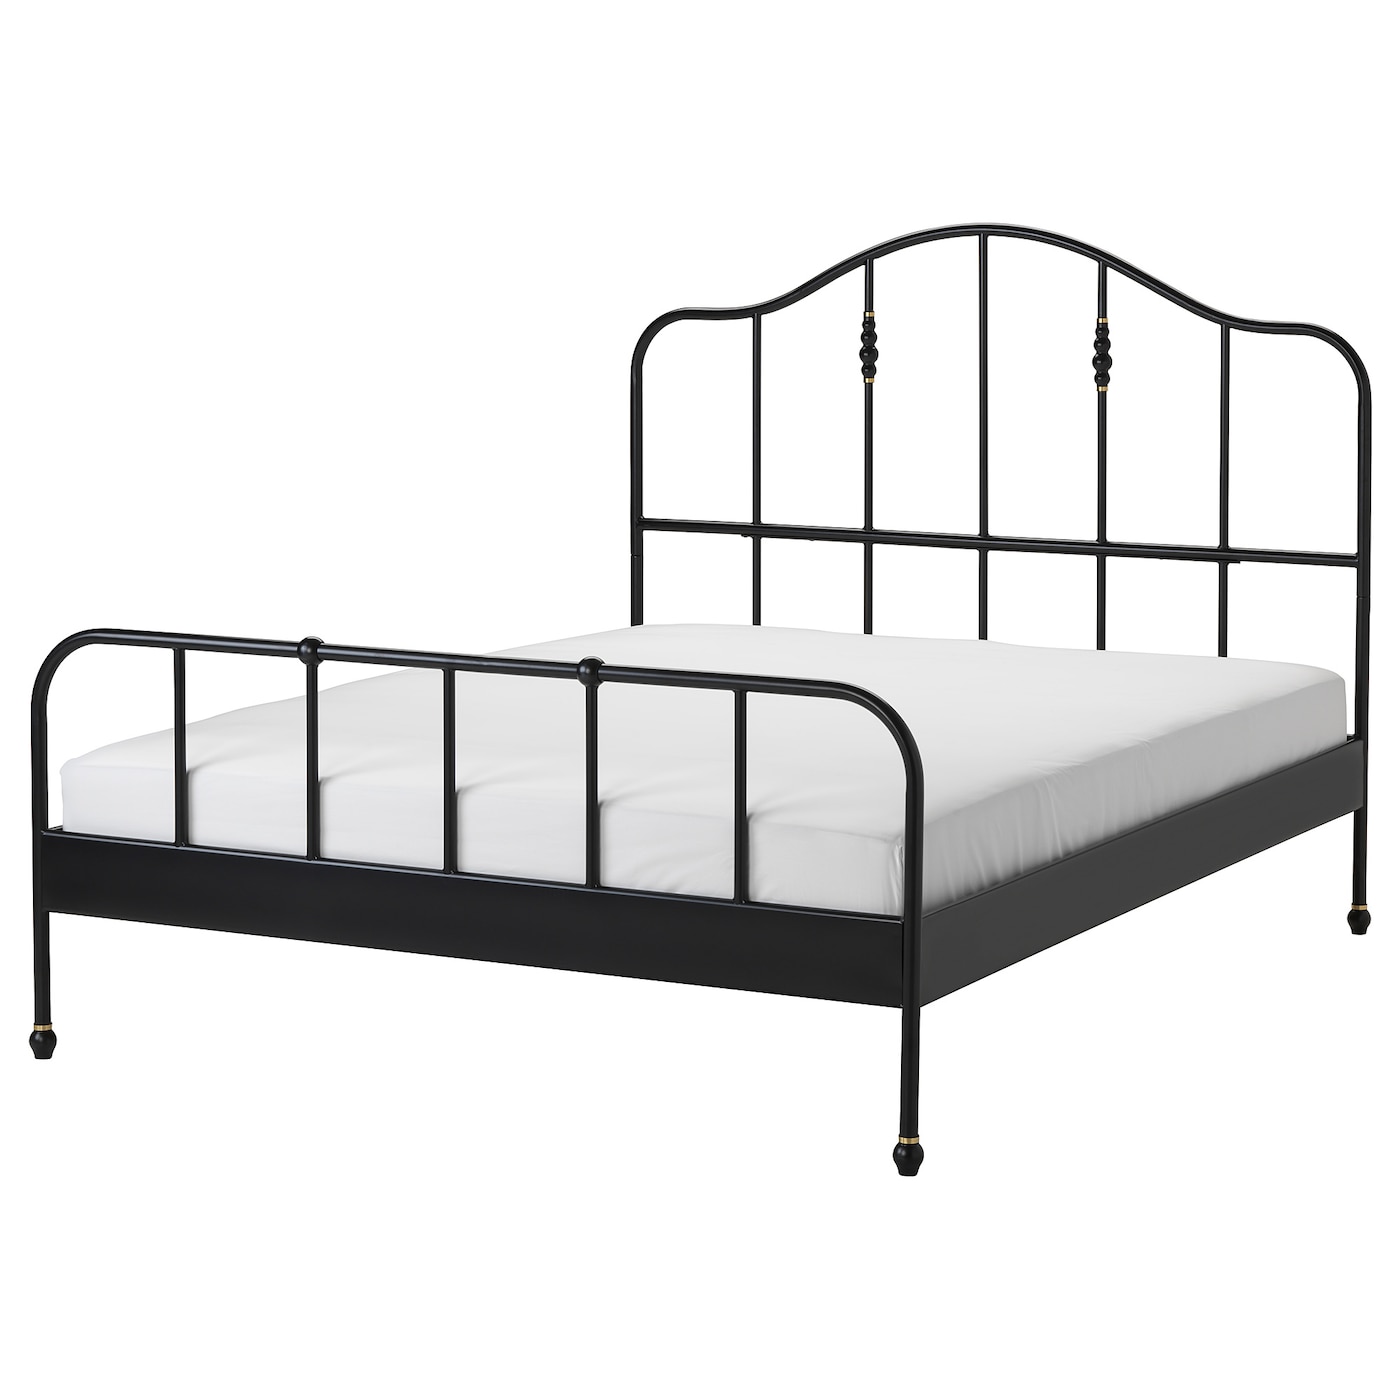 Двуспальная кровать - IKEA SAGSTUA/LINDBÅDEN/LINDBADEN, 200х160 см, черный, САГСТУА/ЛИНДБАДЕН ИКЕА